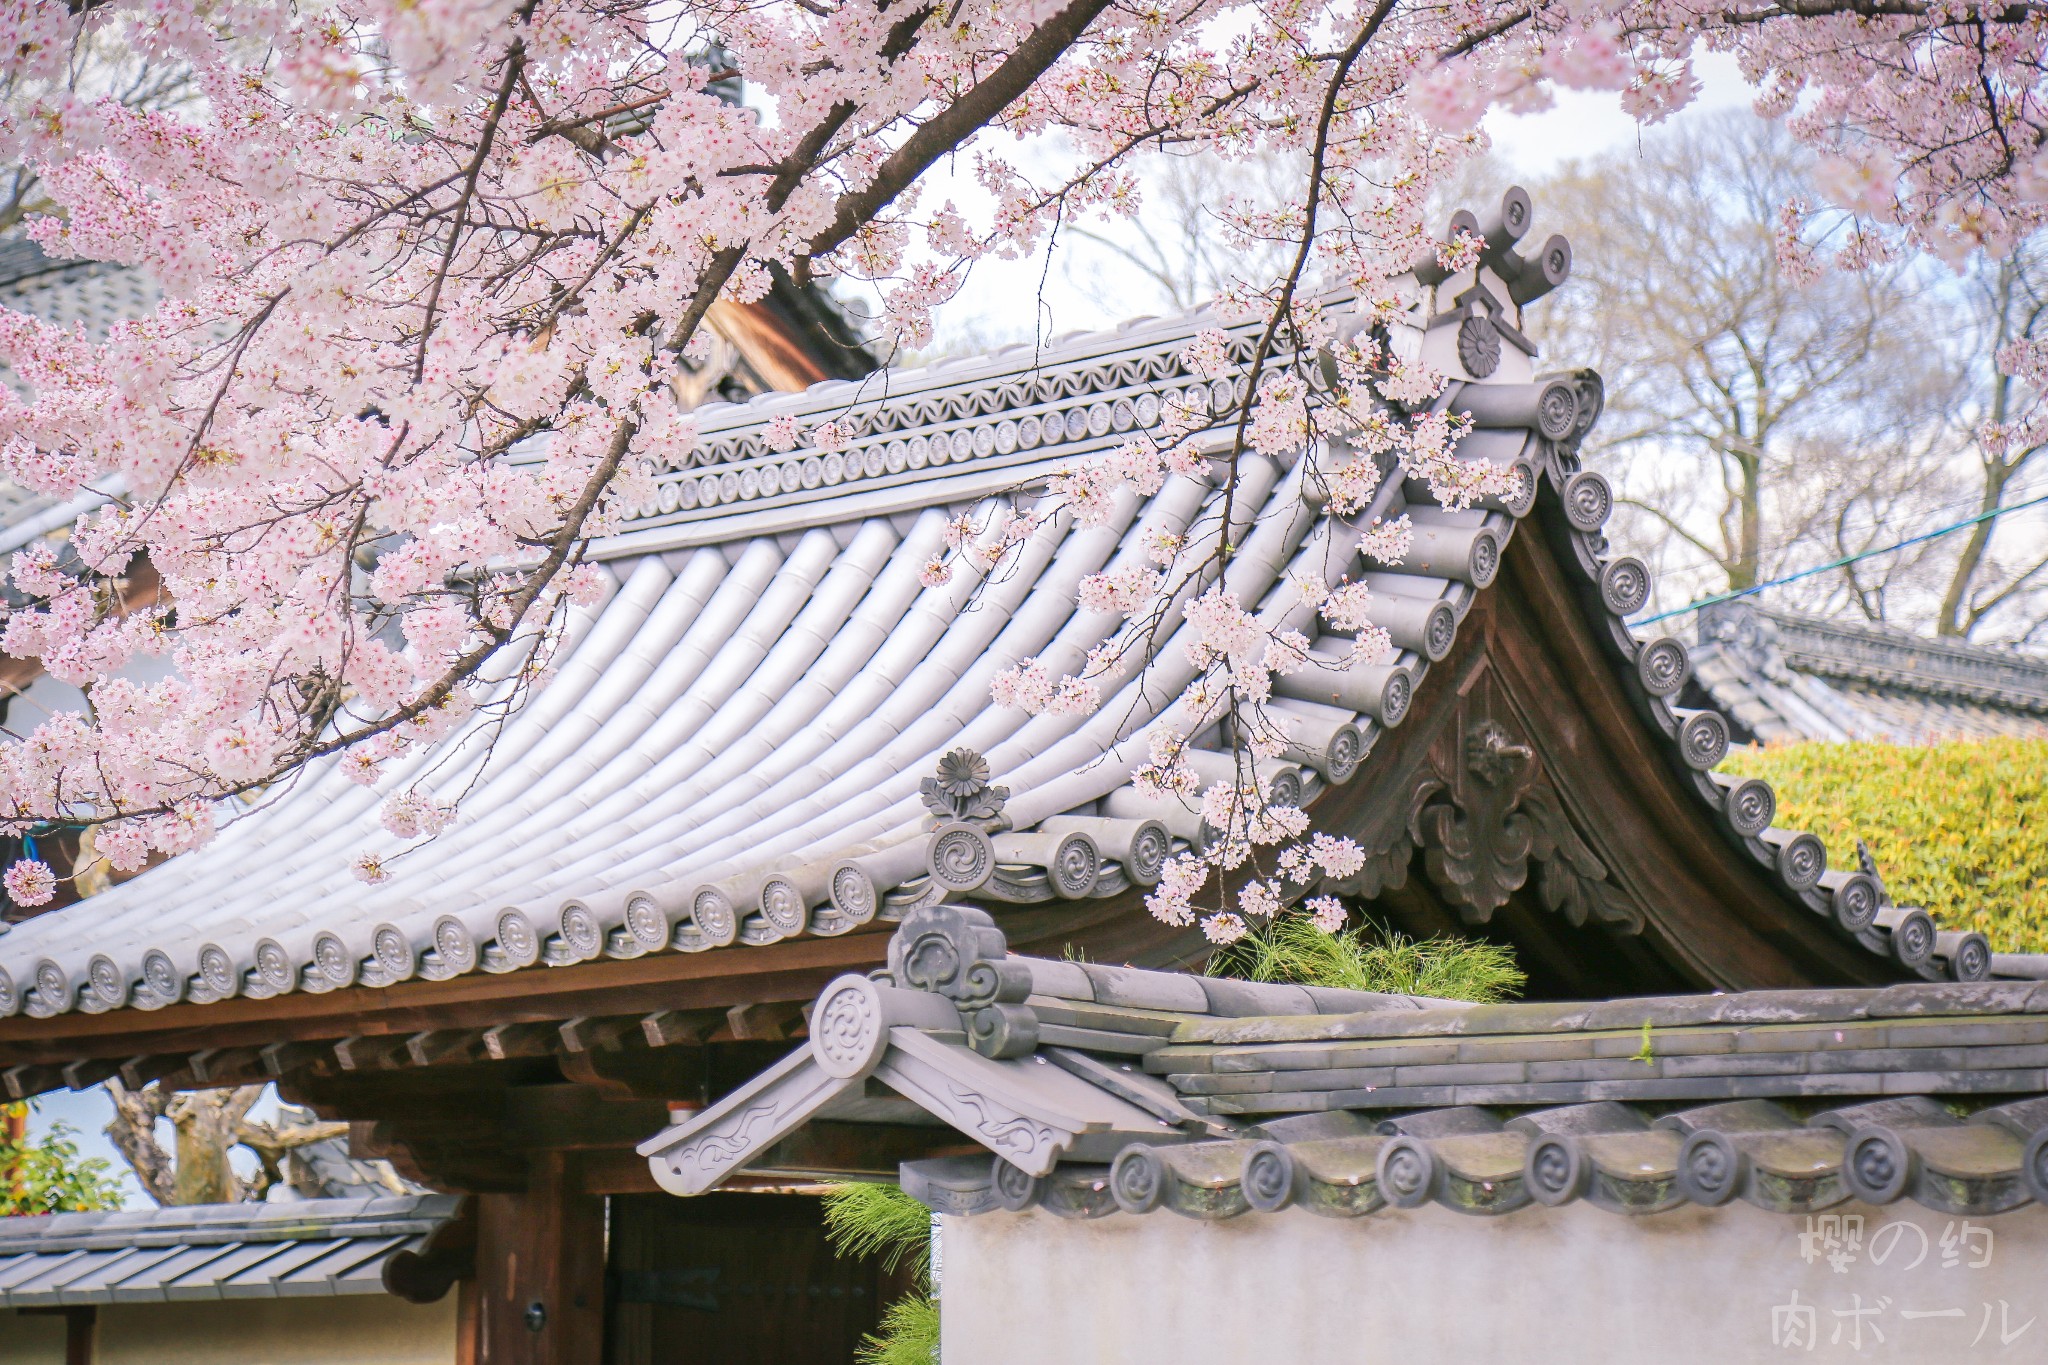 点击查看京都赏樱景点图集